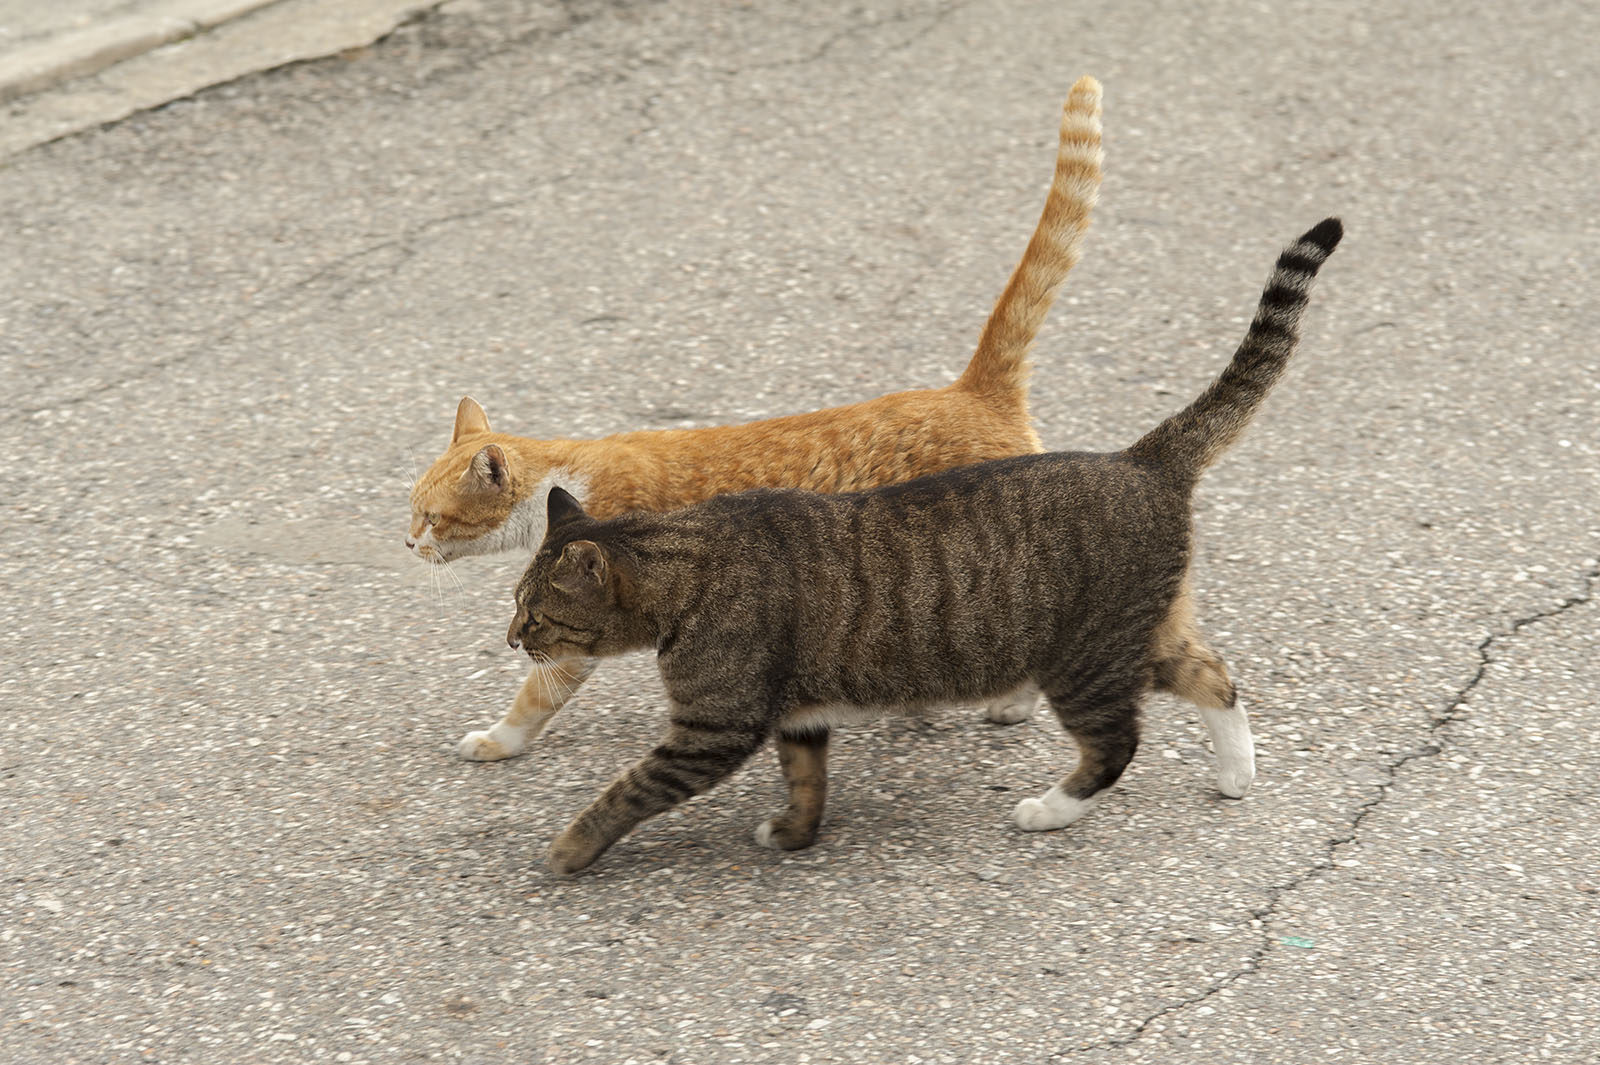 꼬리들고 나란히 걸어가는 두 고양이